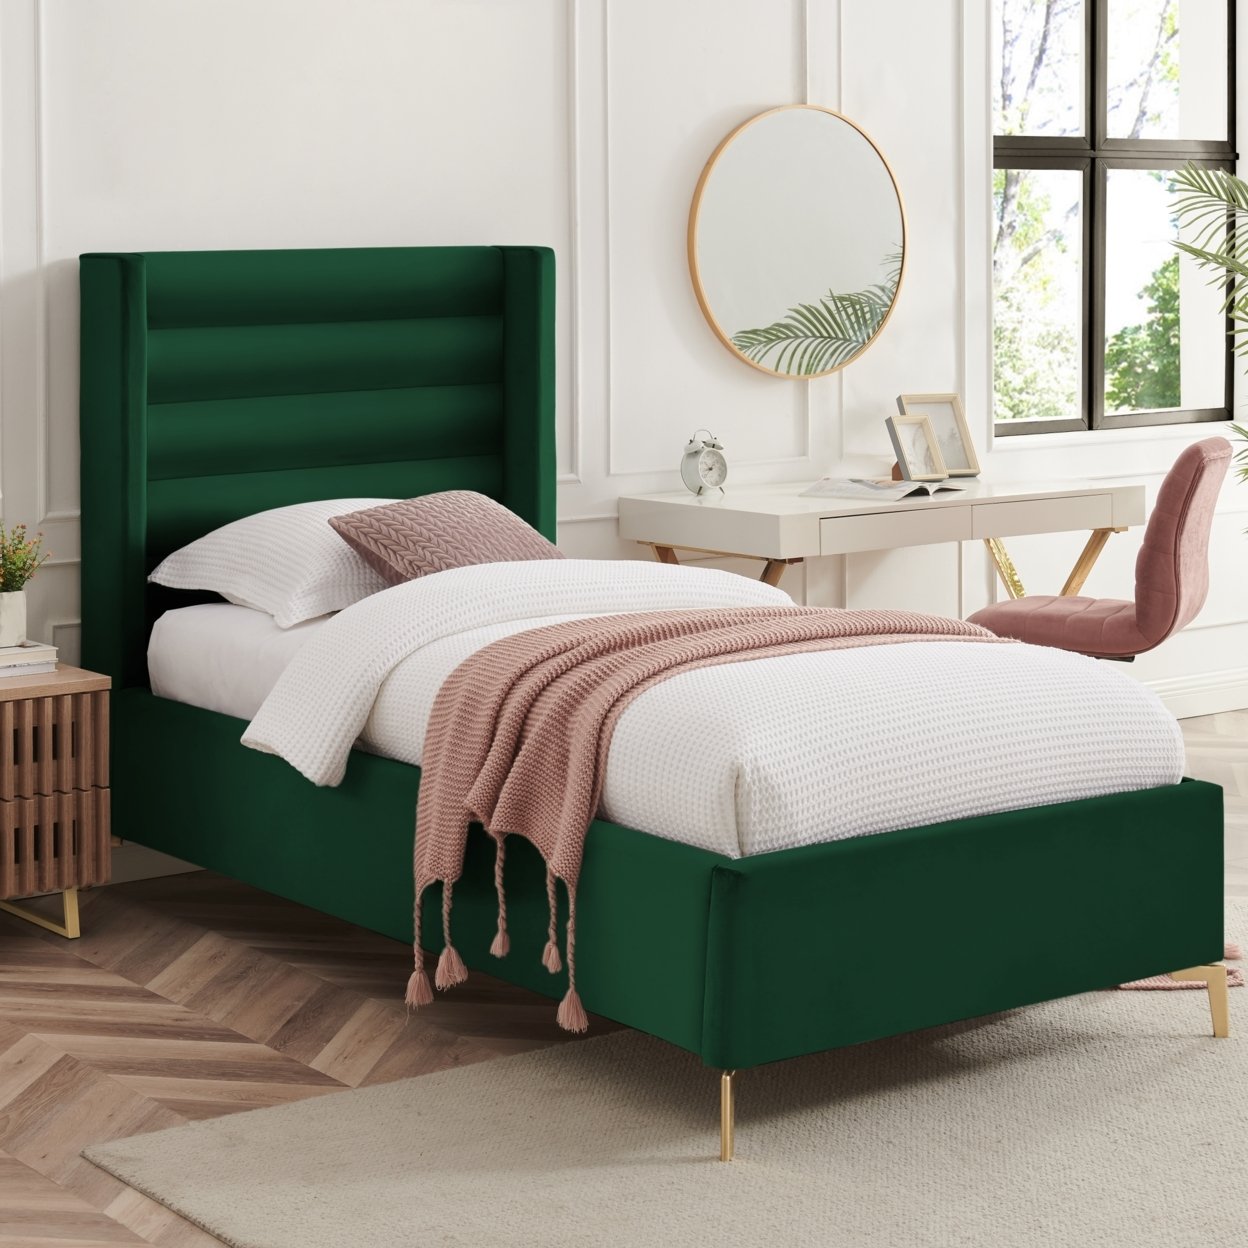 Rayce Bed -Velvet Upholstered, Wingback Channel Tufted Headboard, Oblique Legs, Slats Included - Green, Full